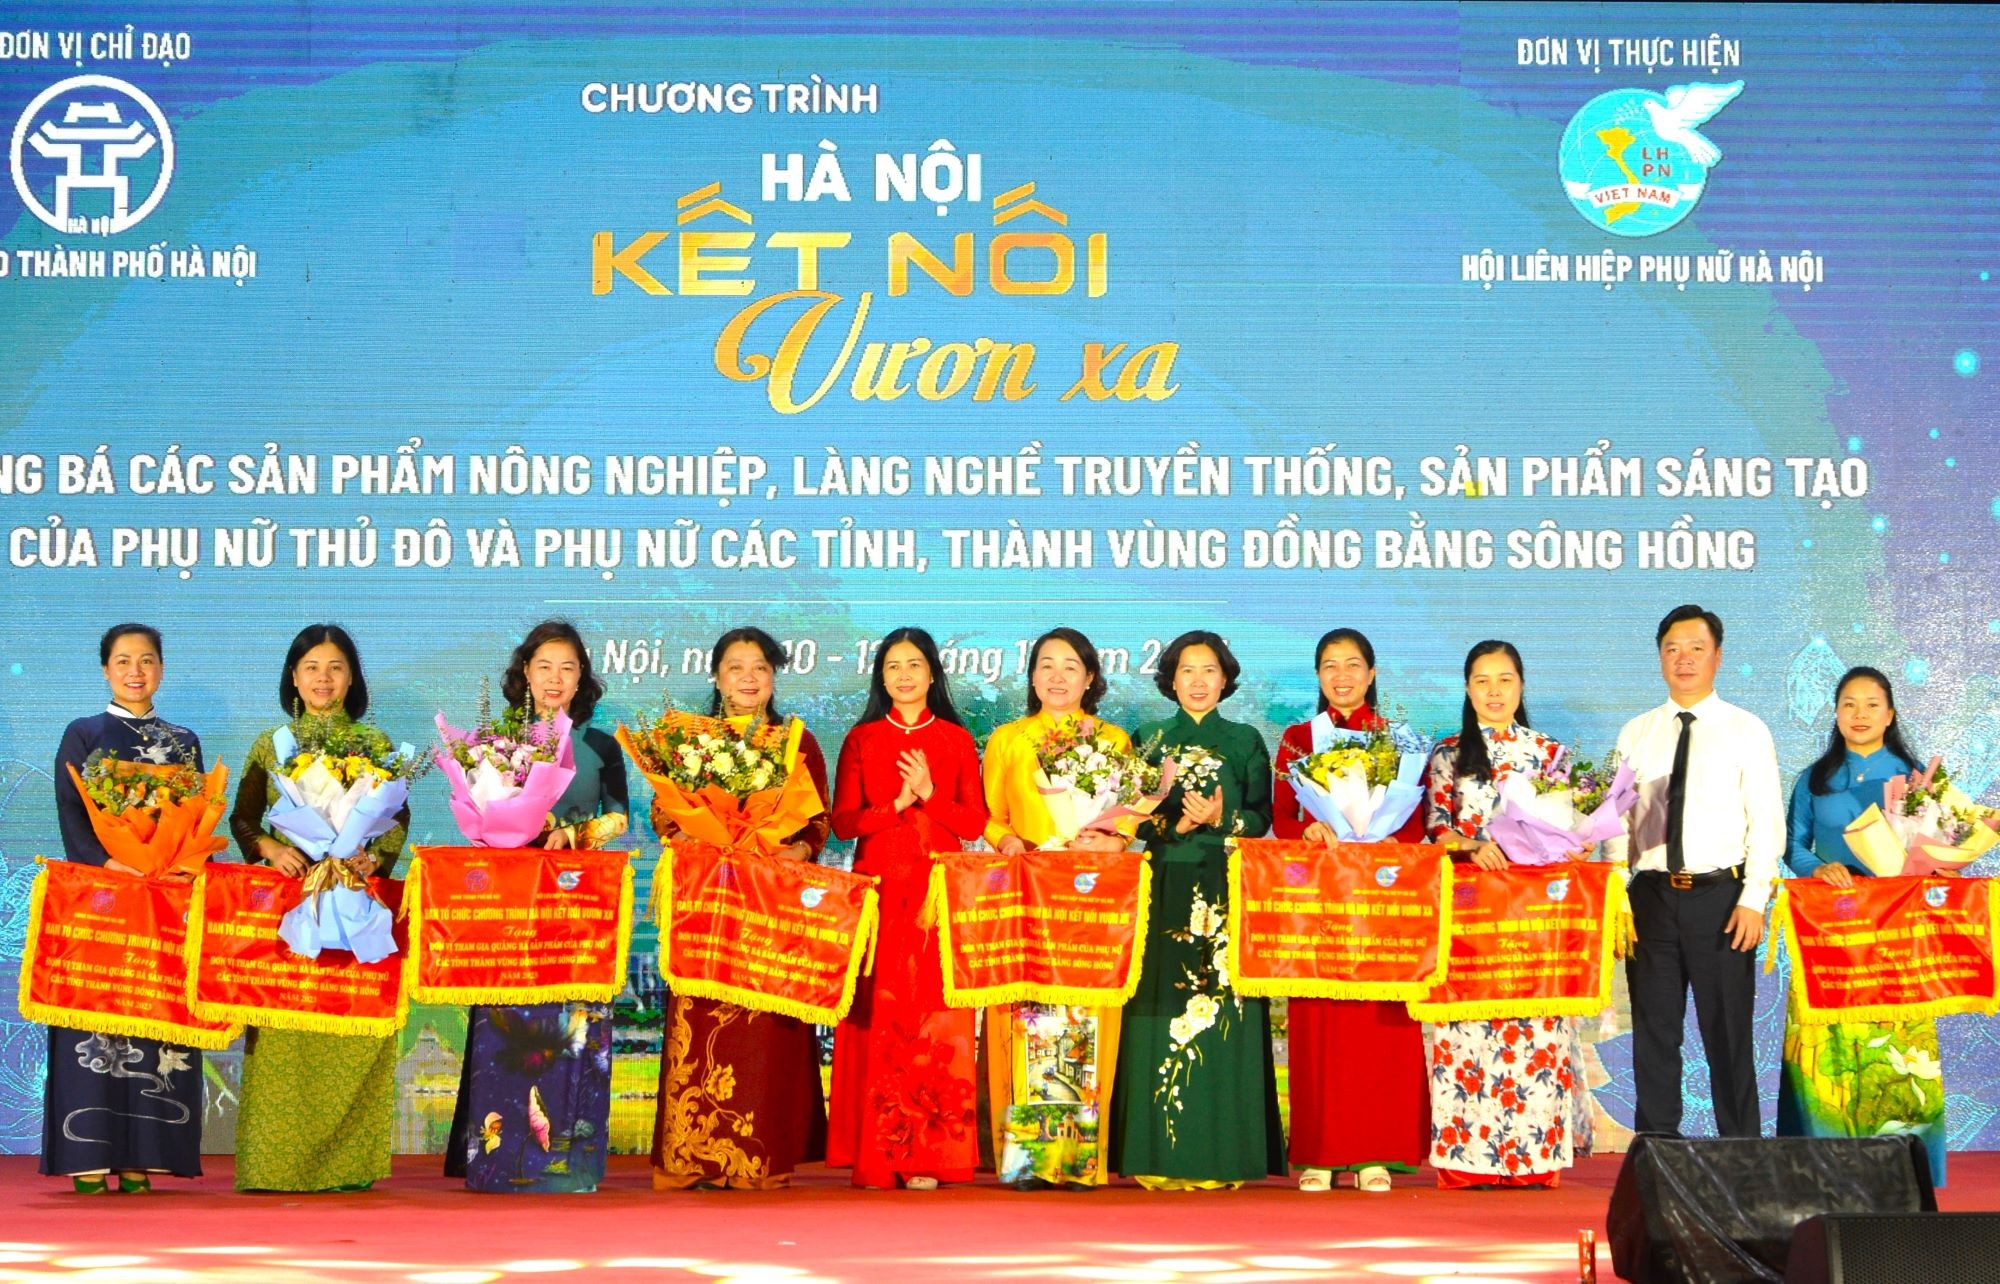 Giao lưu, quảng bá sản phẩm sáng tạo của phụ nữ Hà Nội và các tỉnh, thành vùng đồng bằng sông Hồng